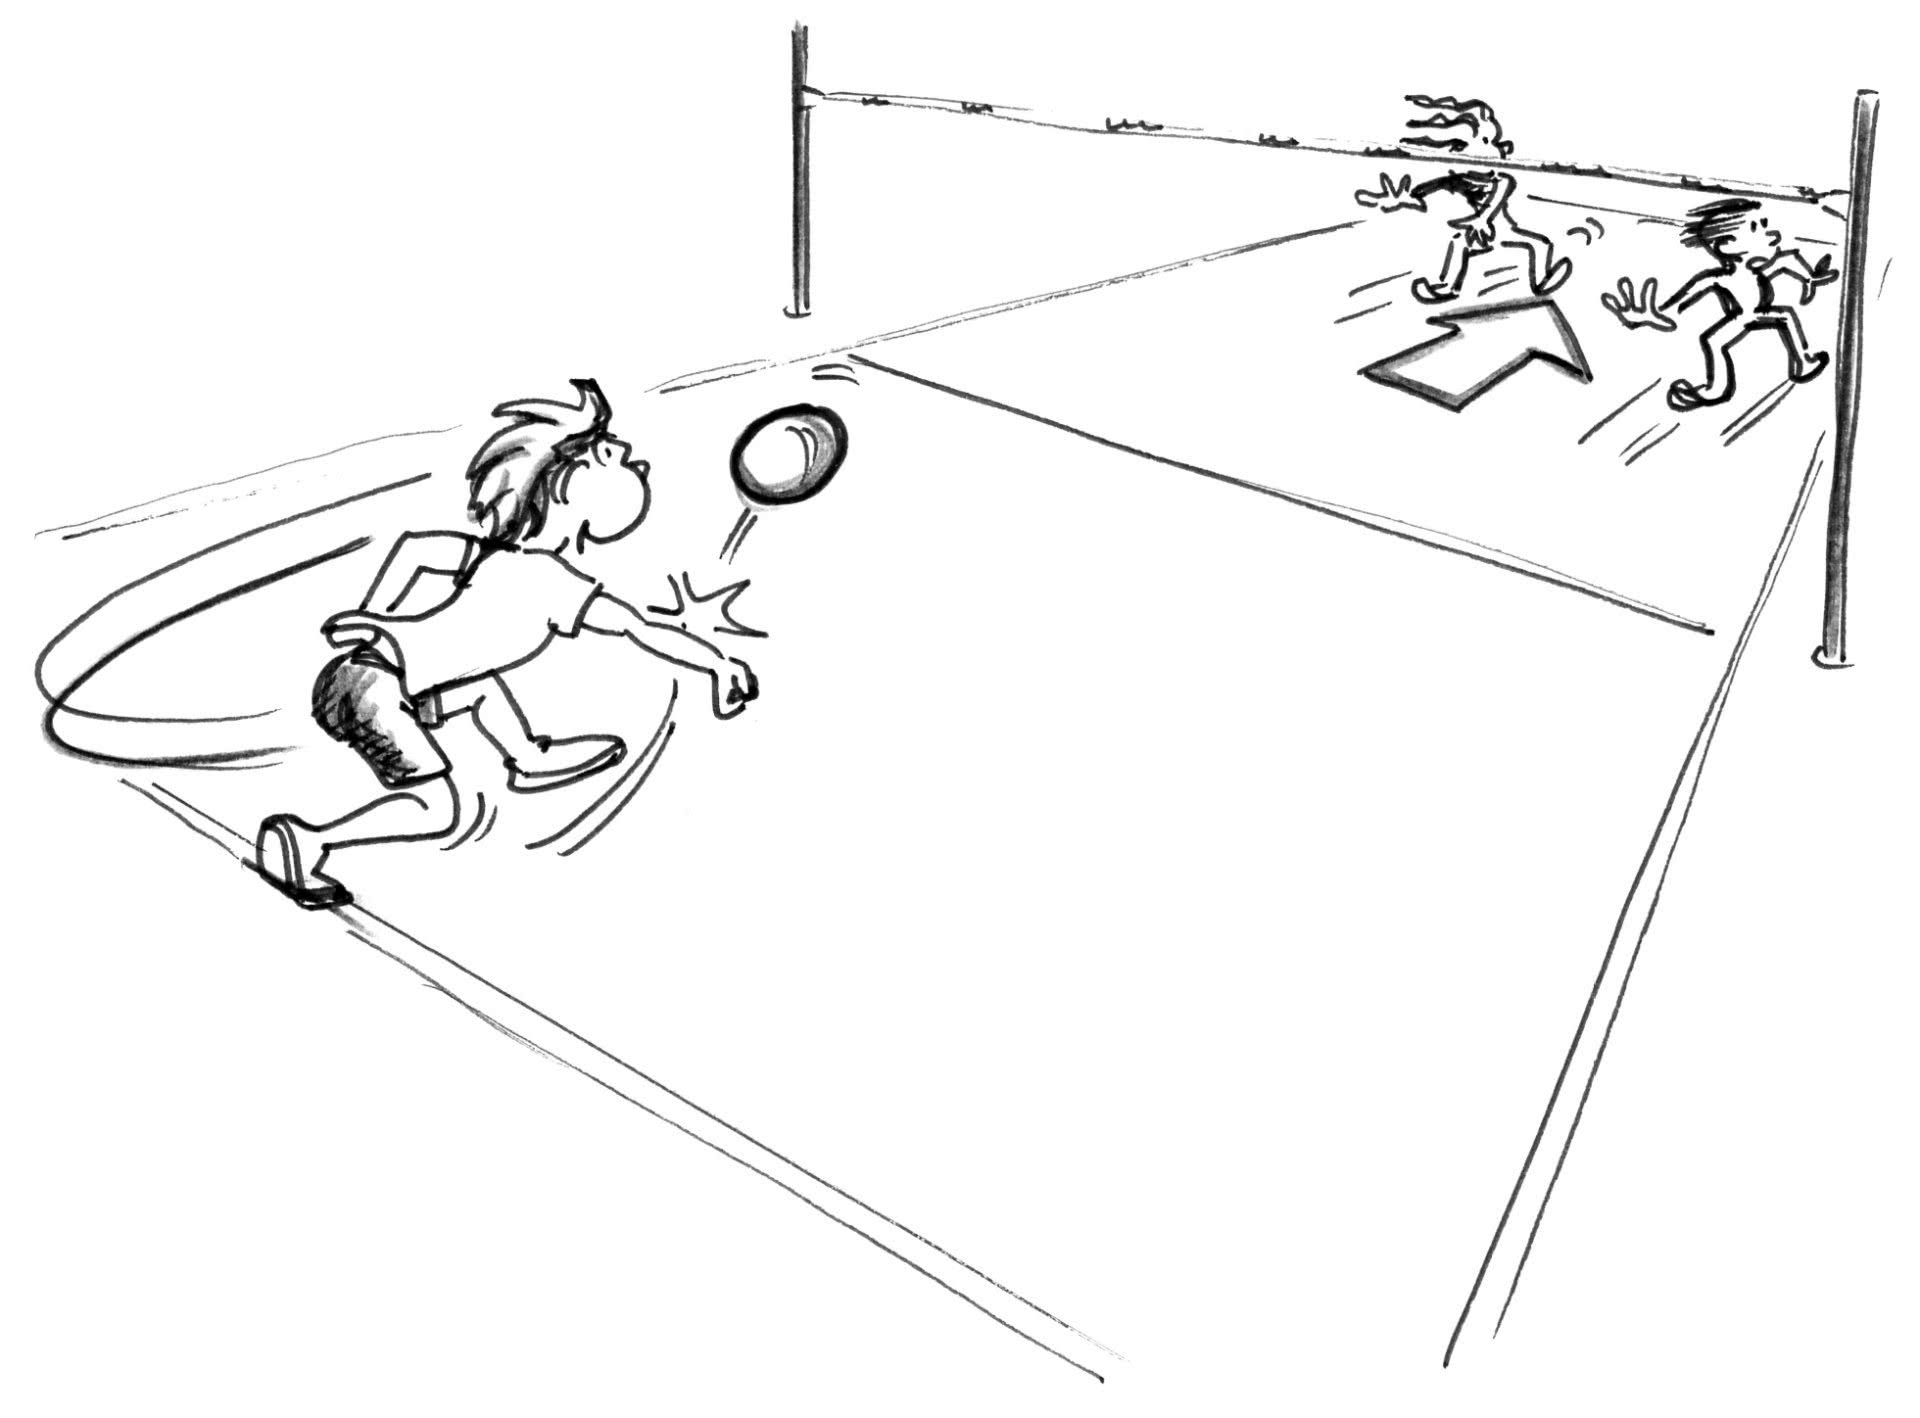 DessIn: un joueur renvoie le ballon dans le camp opposé où se trouvent deux adversaires.